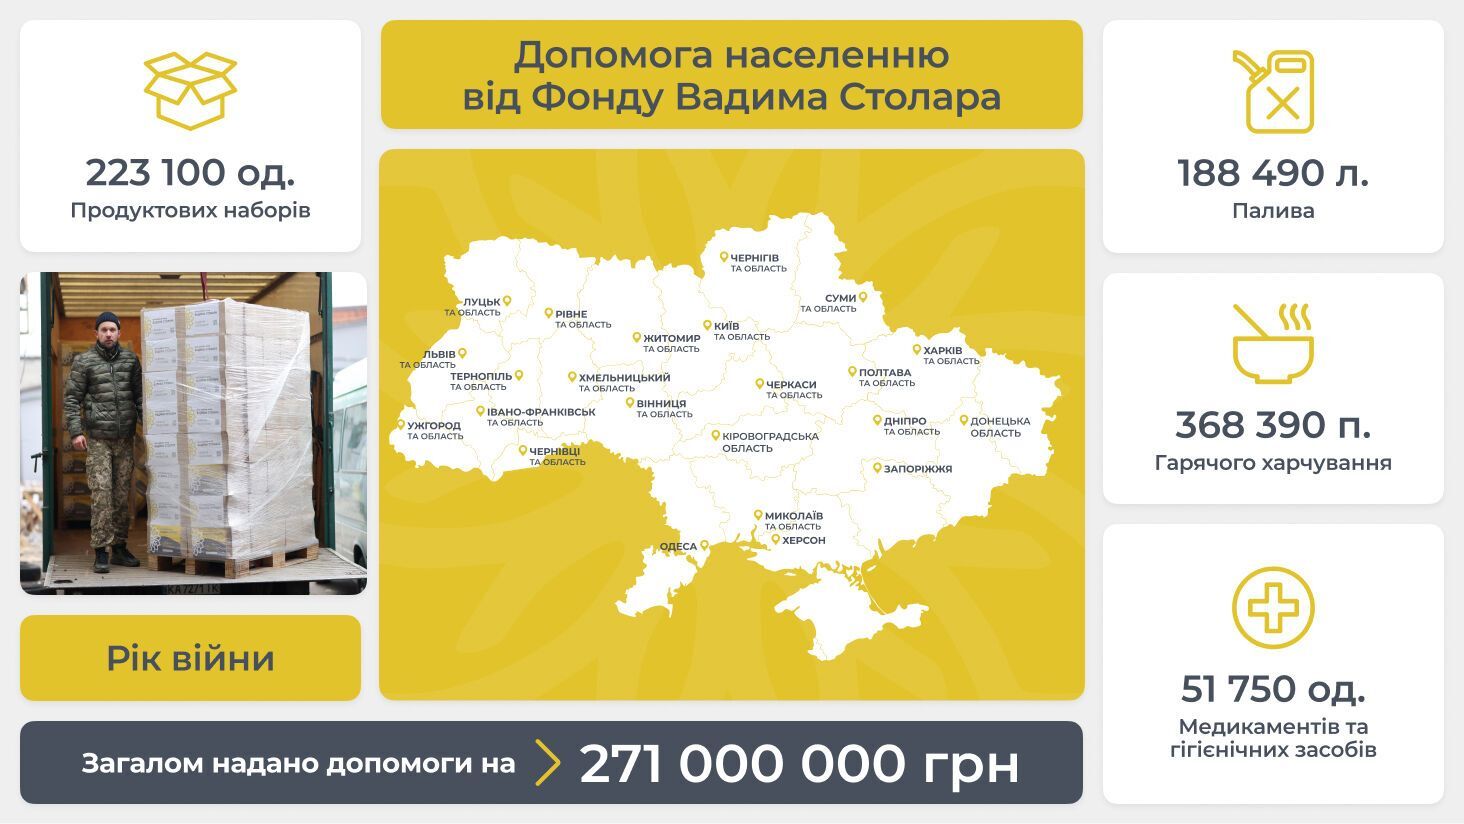 Благодійний фонд Вадима Столара за рік війни надав допомоги на 271 млн грн